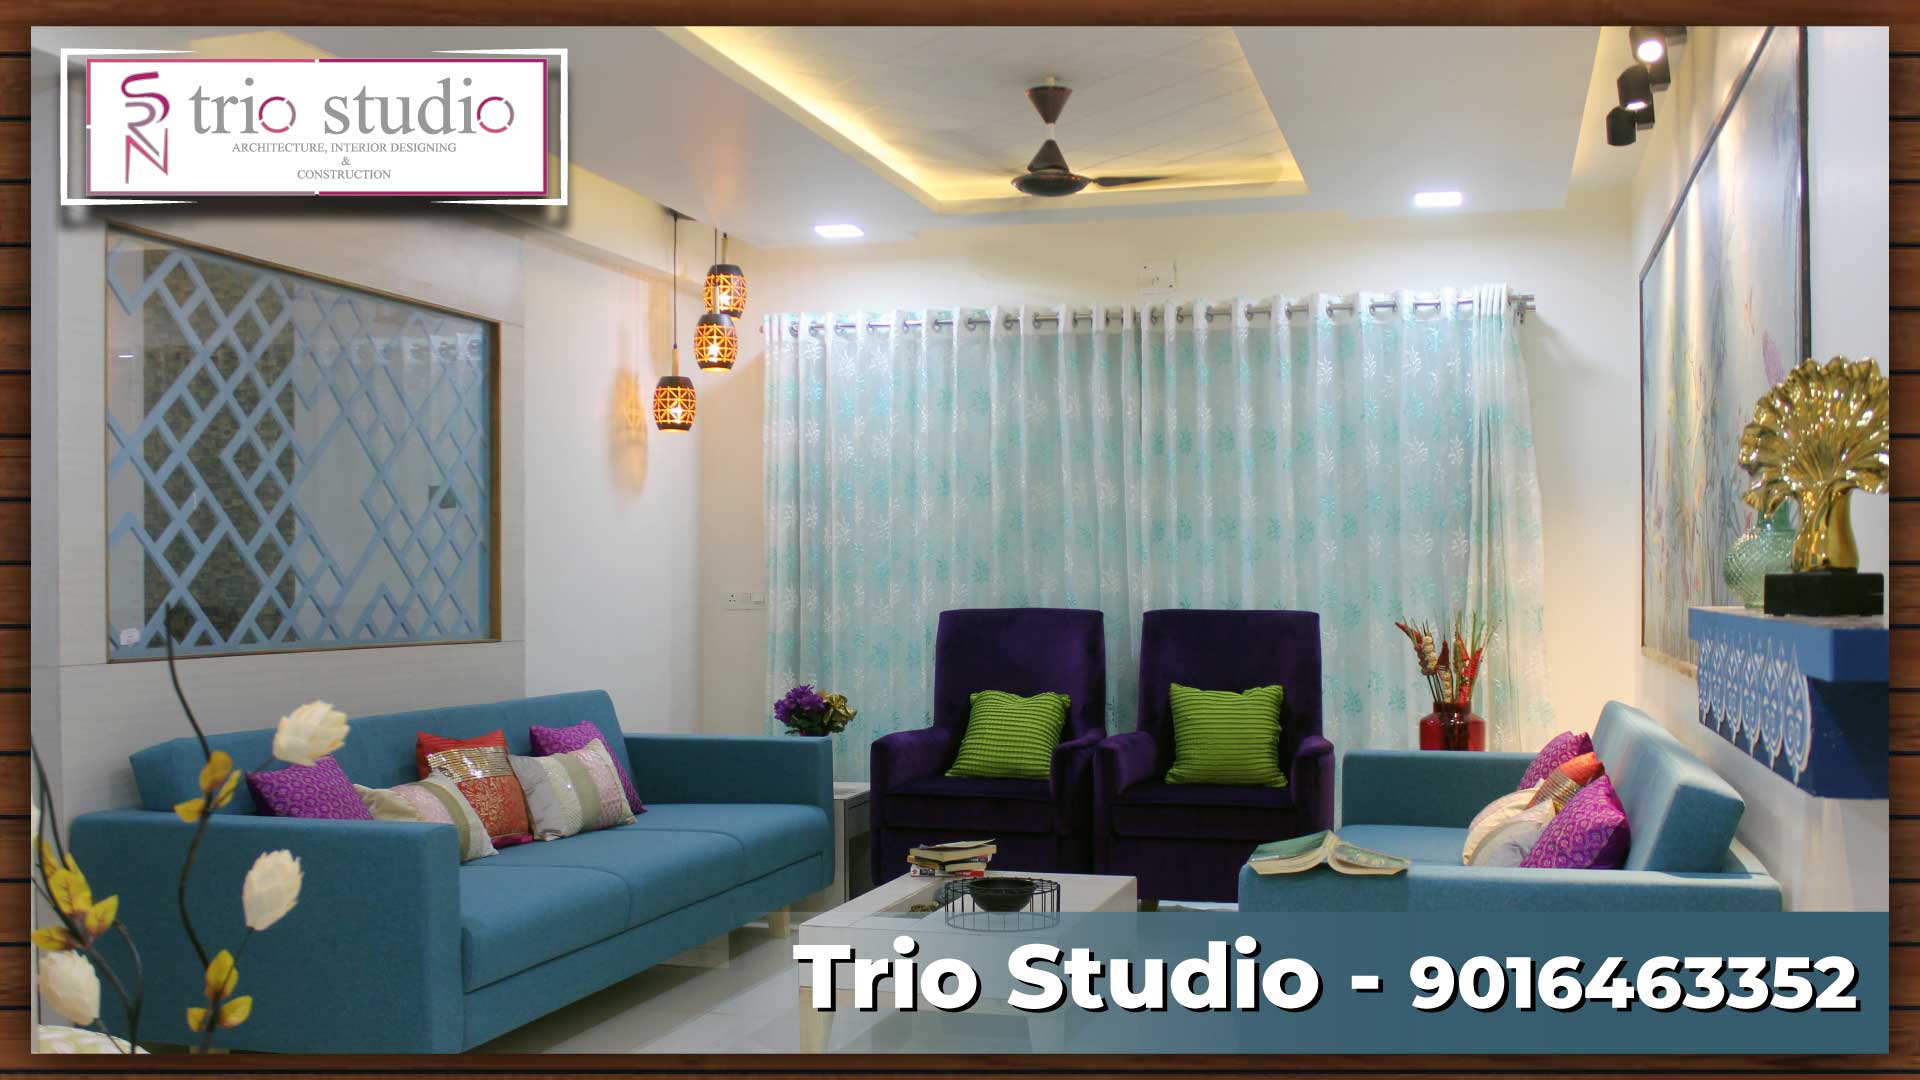 Best Interior Design Studio Banners Idea – Trio Studio